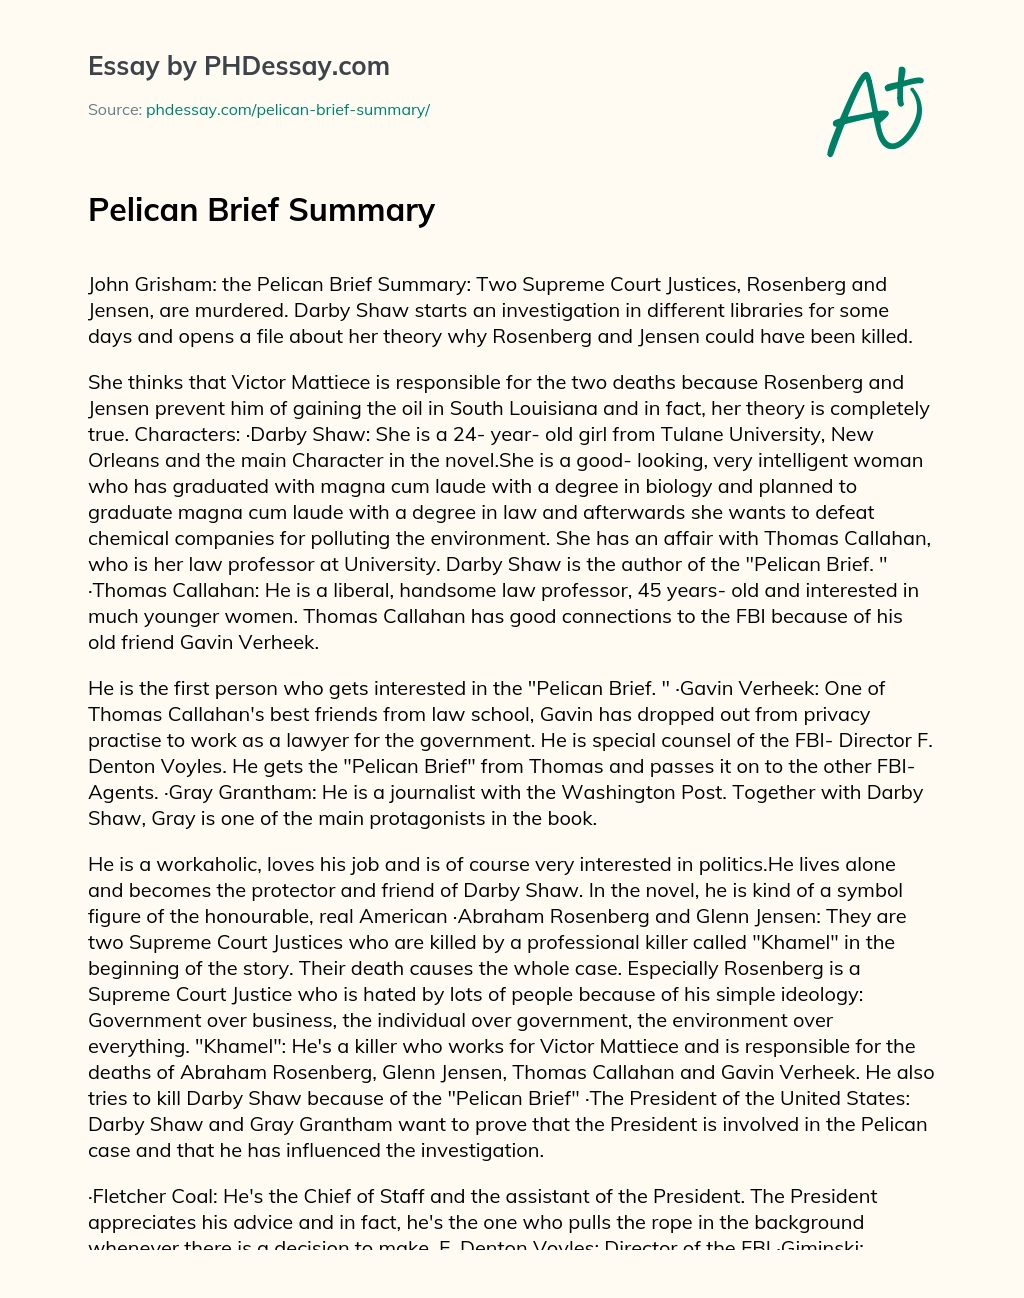 Pelican Brief Summary essay